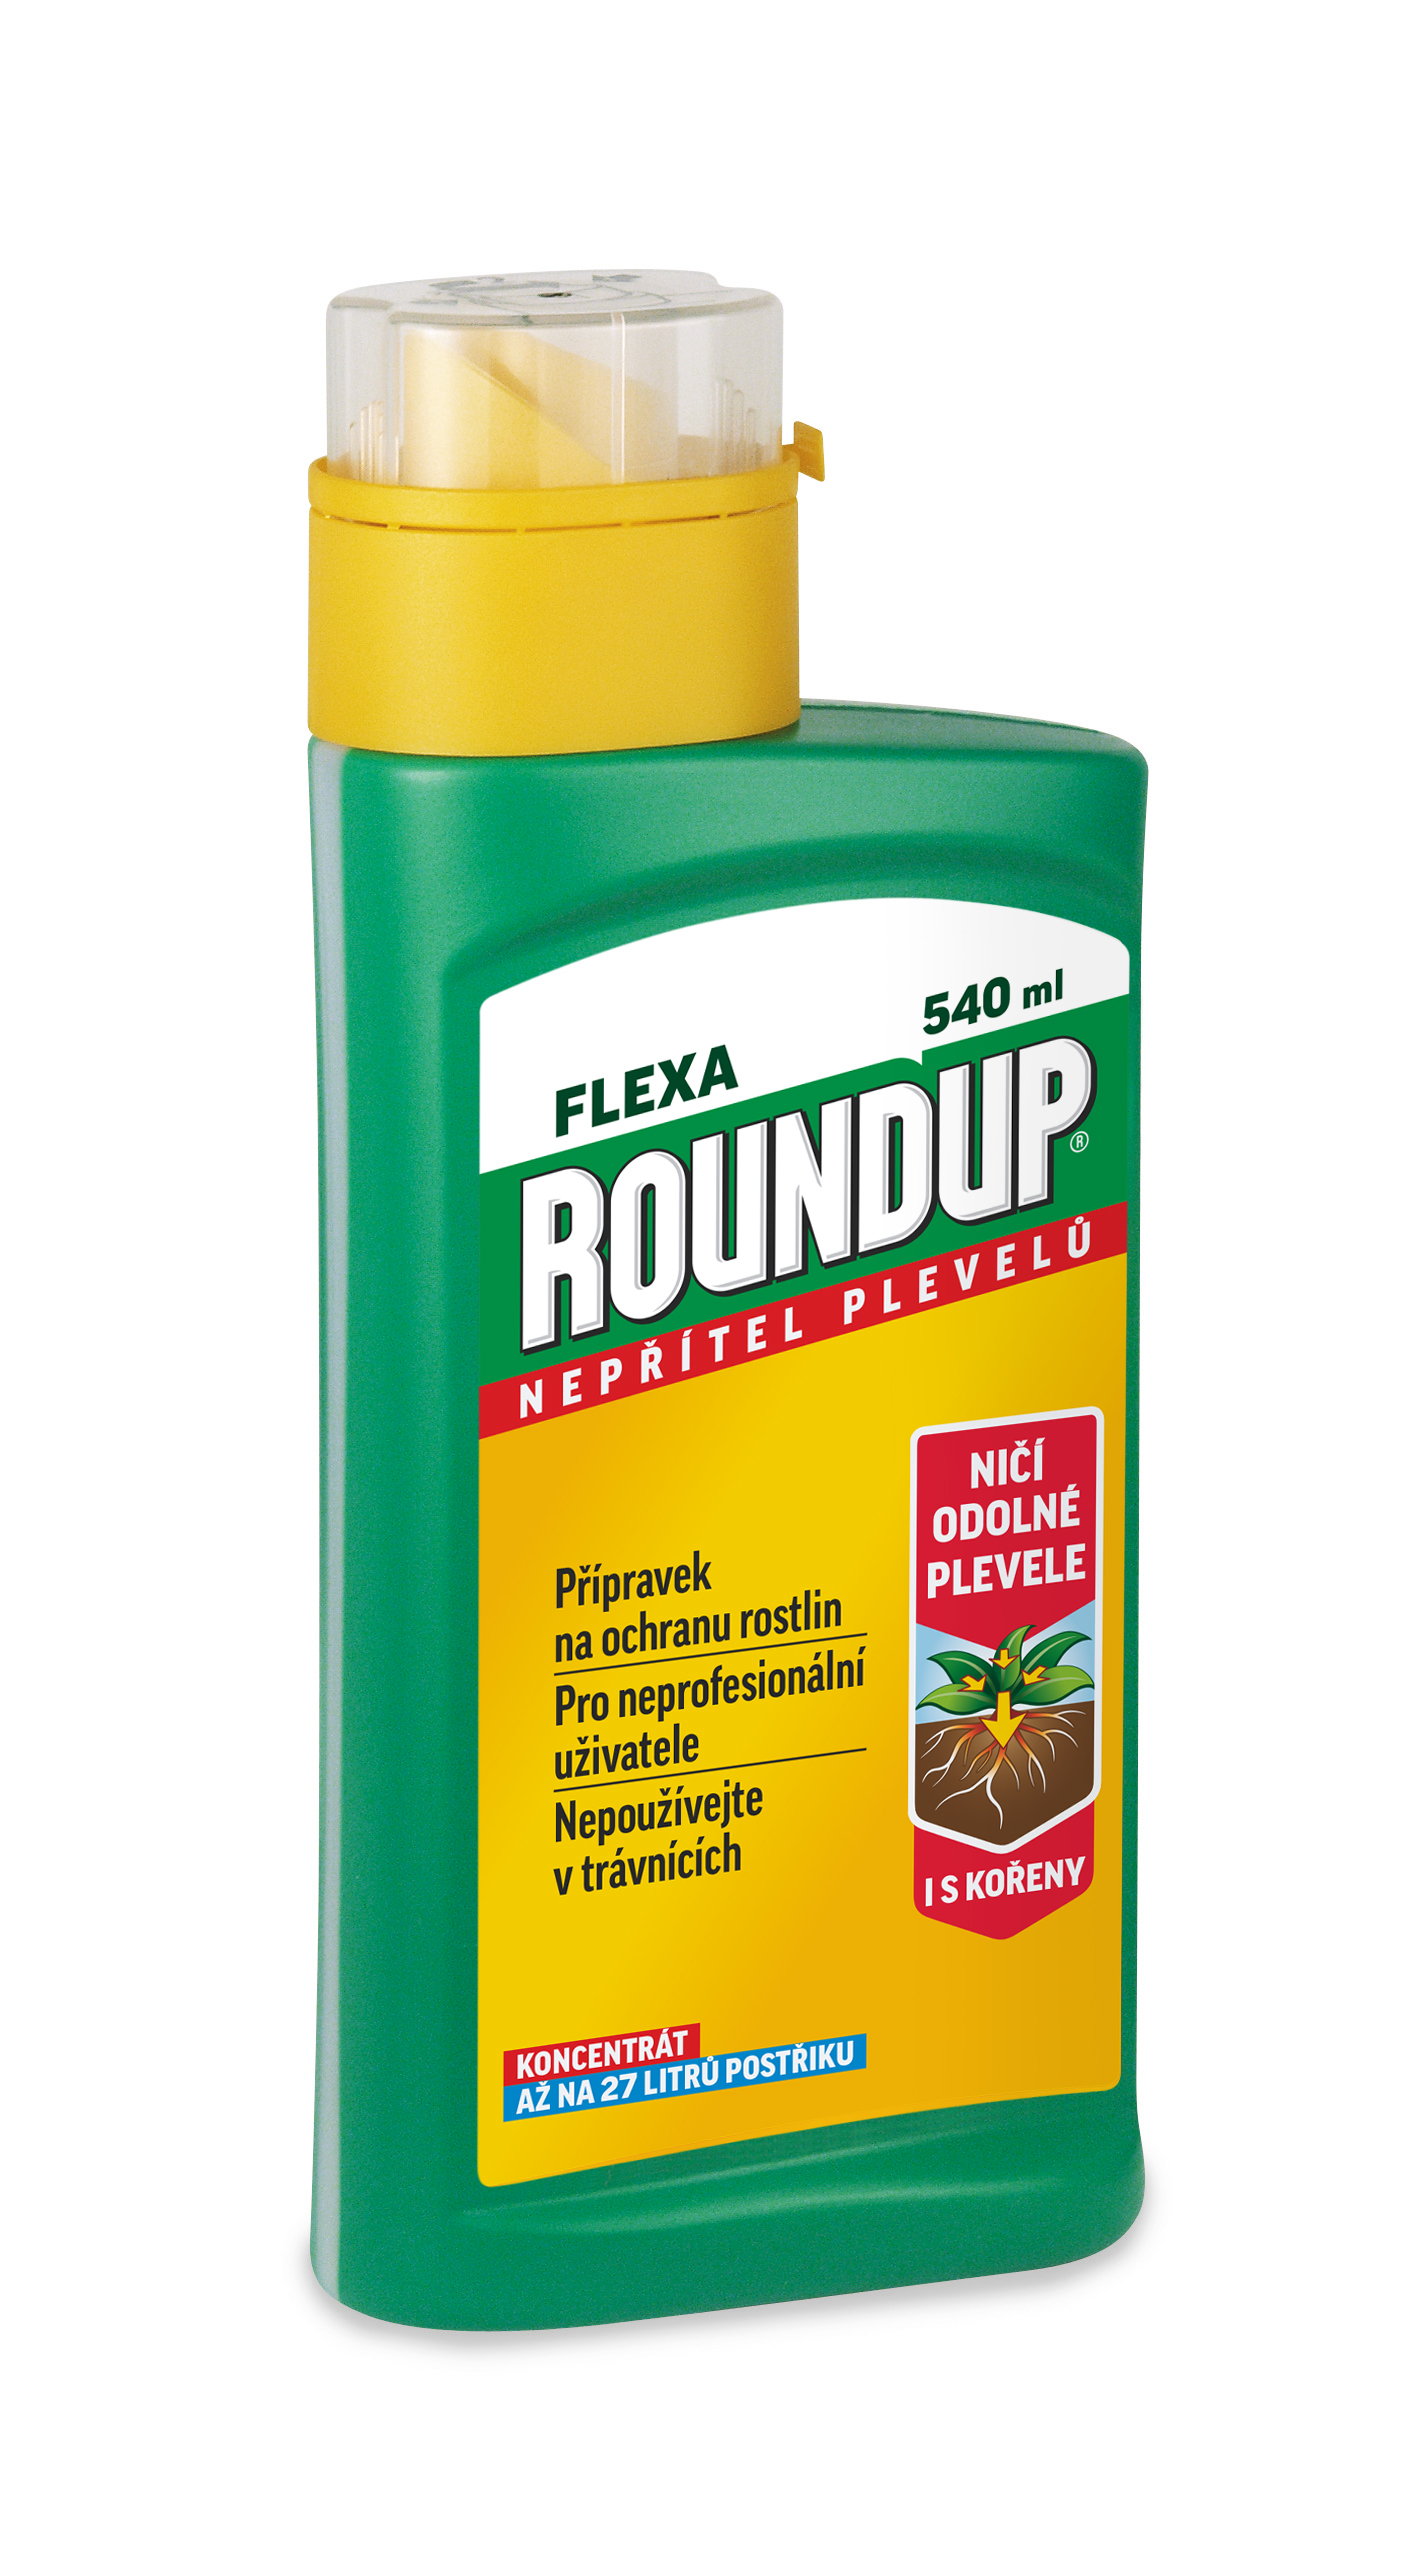 Roundup Flexa 540 ml 1531122